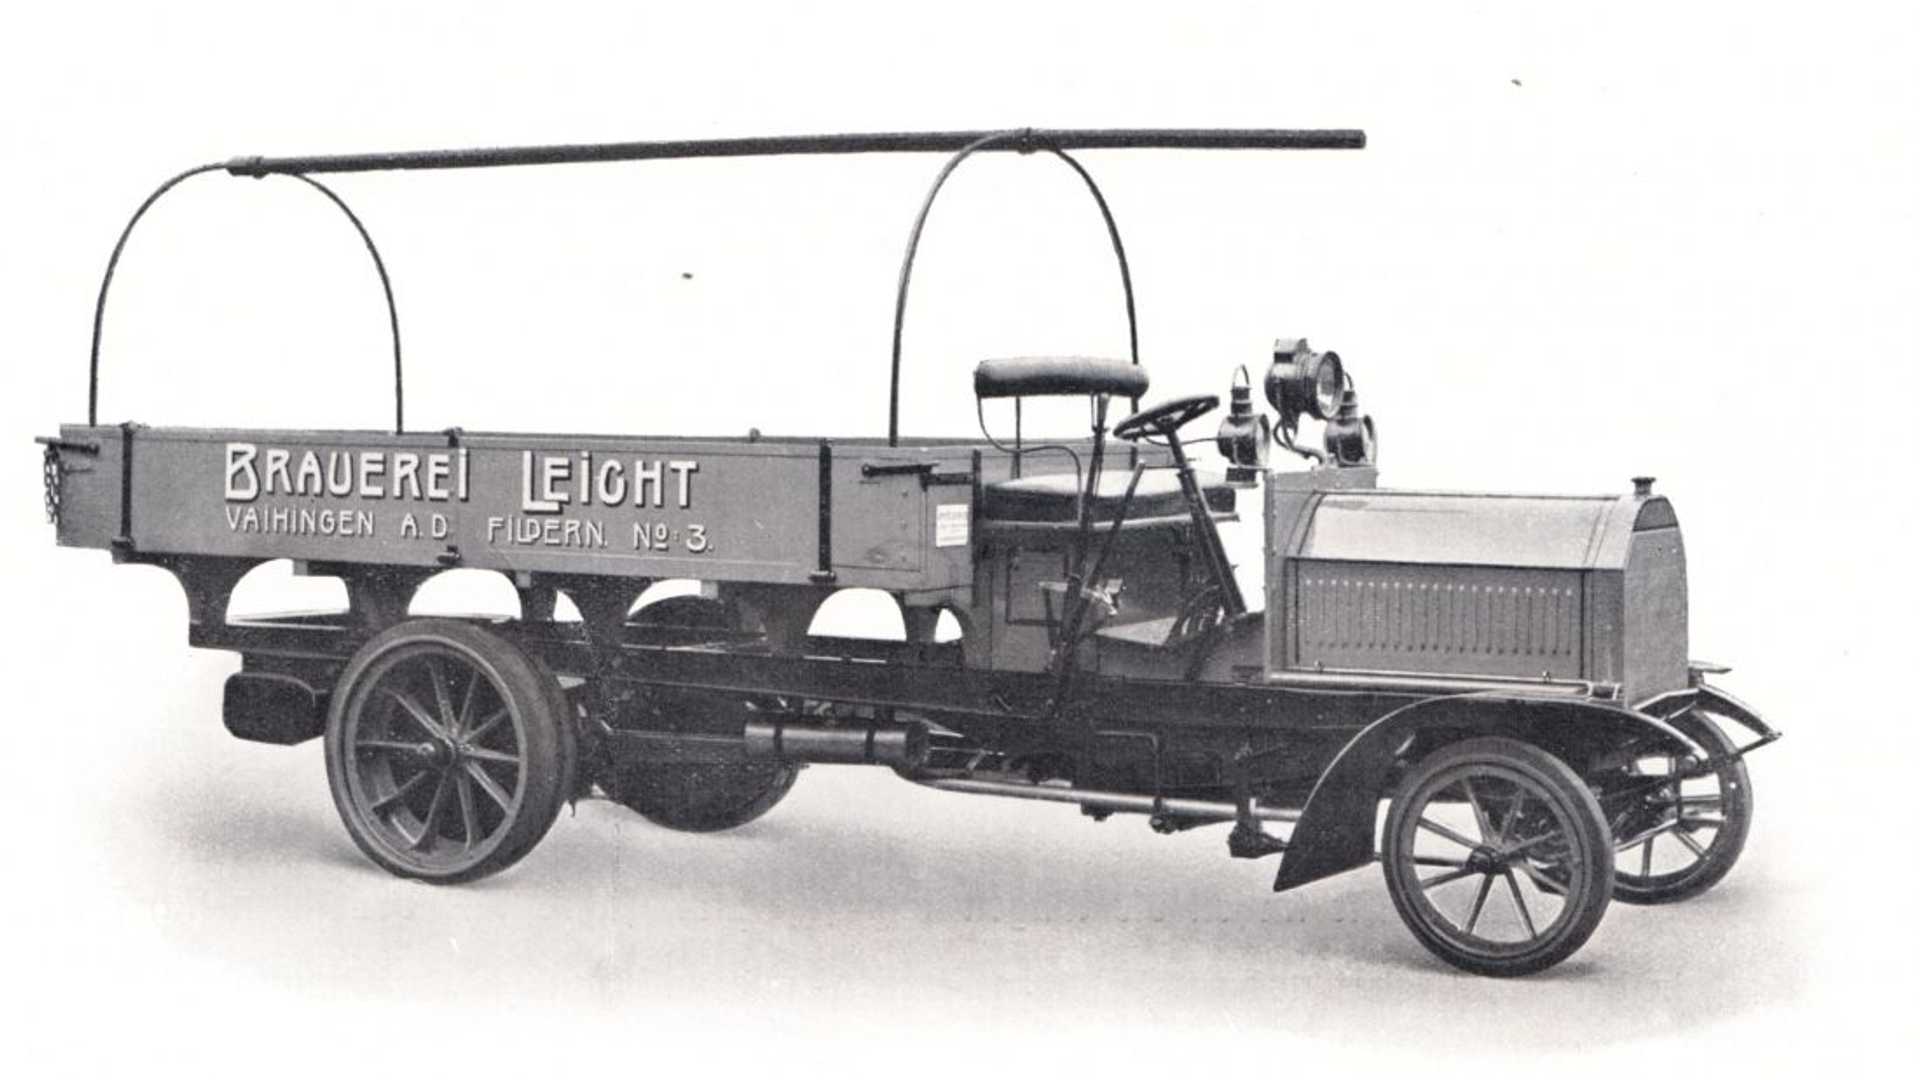  أول شاحنة في العالم من إنتاج دايملر